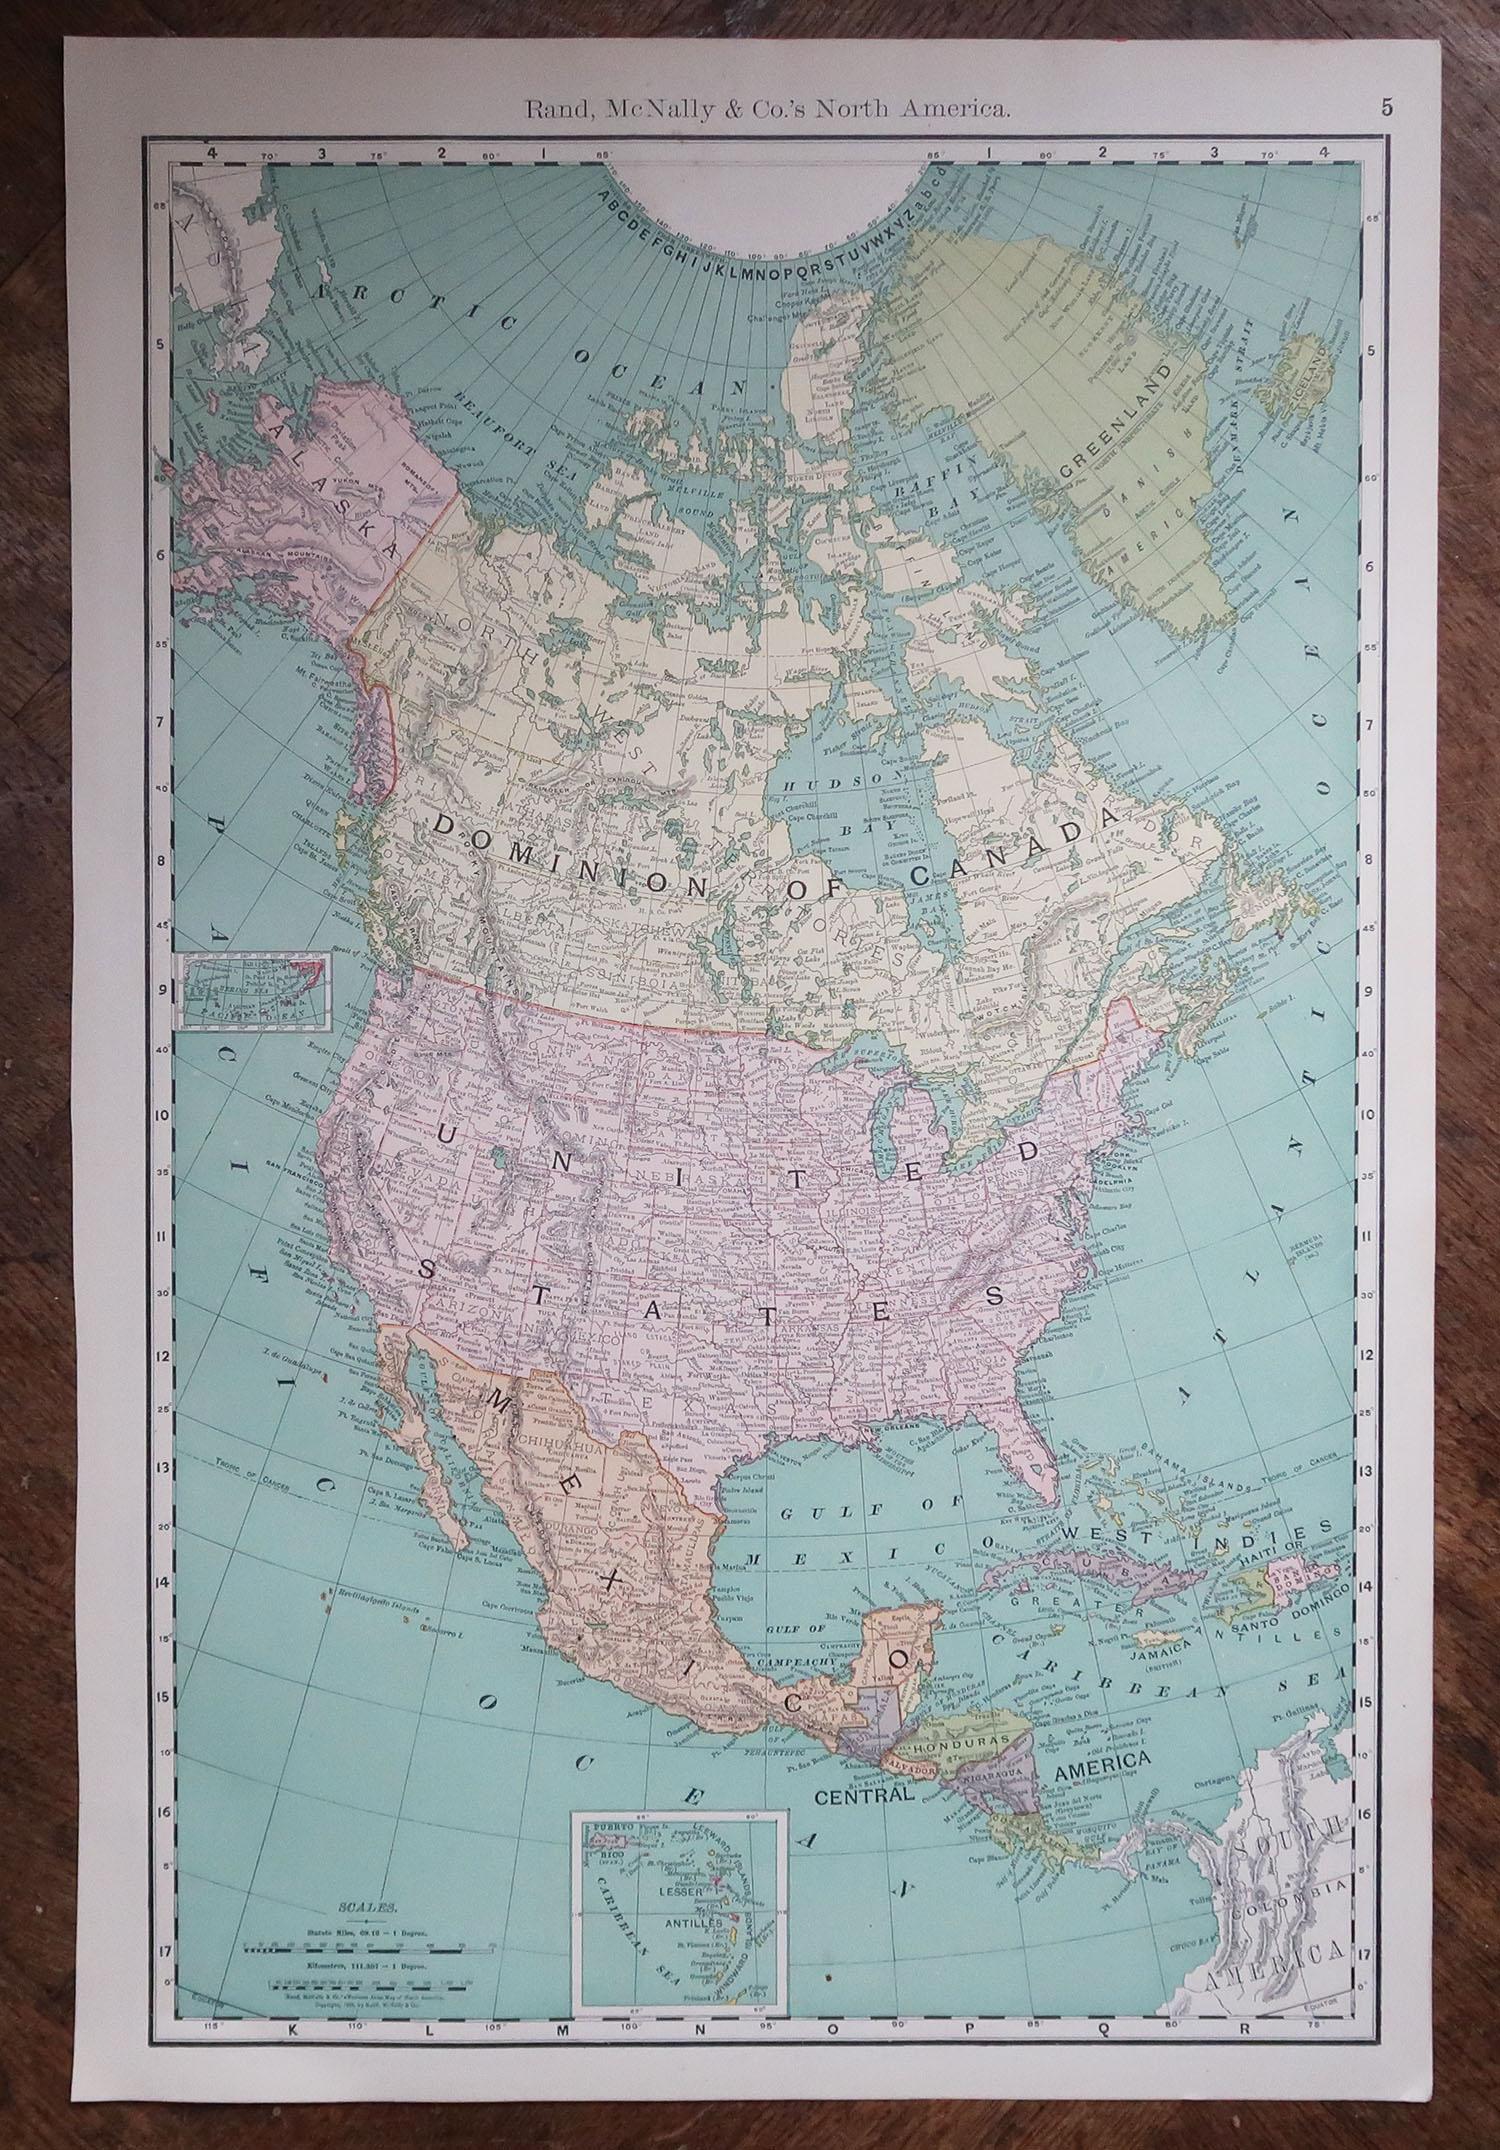 American Large Original Antique Map of North America, 1891